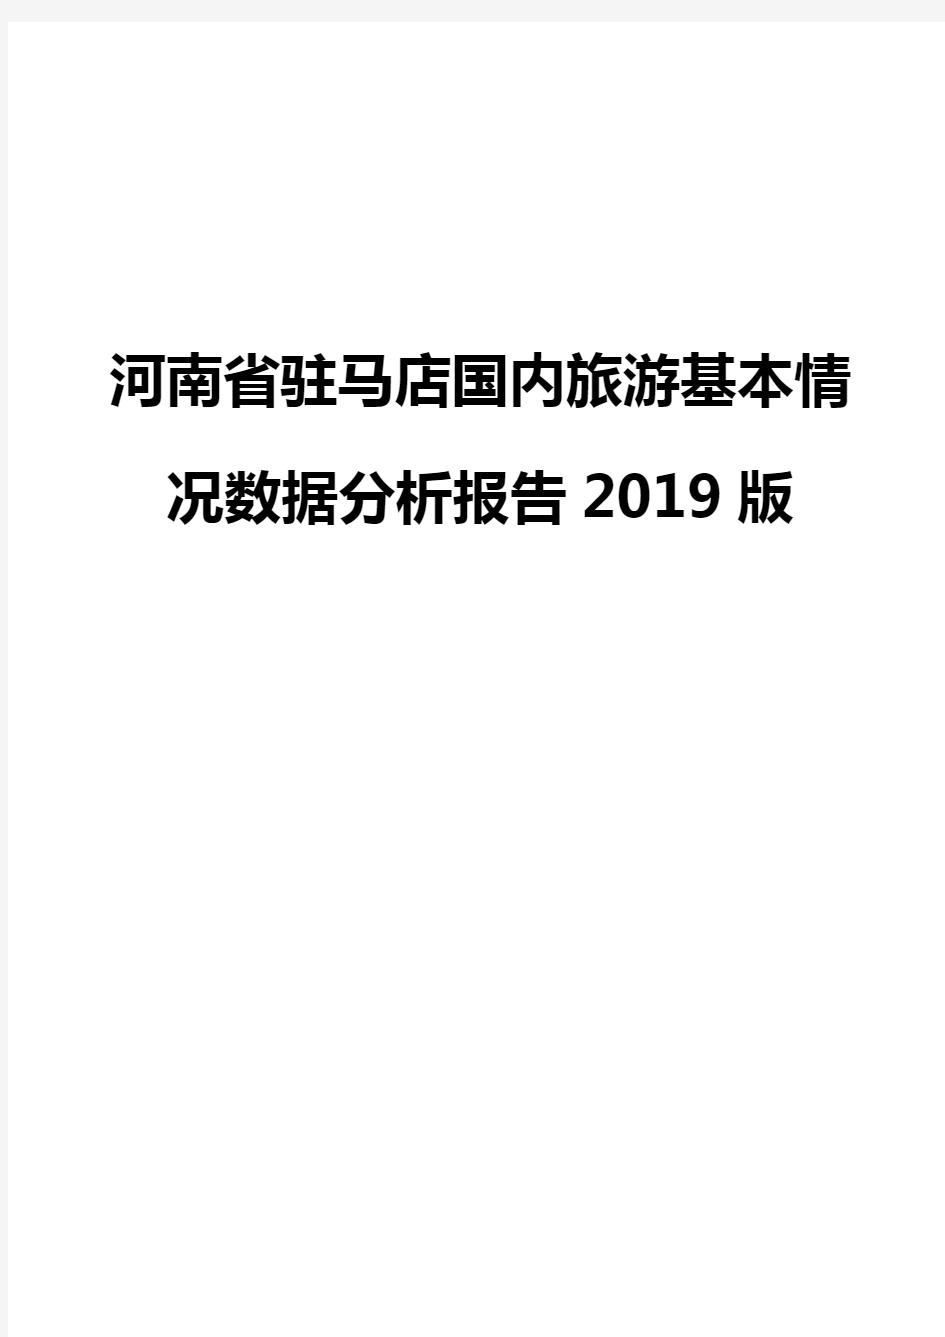 河南省驻马店国内旅游基本情况数据分析报告2019版